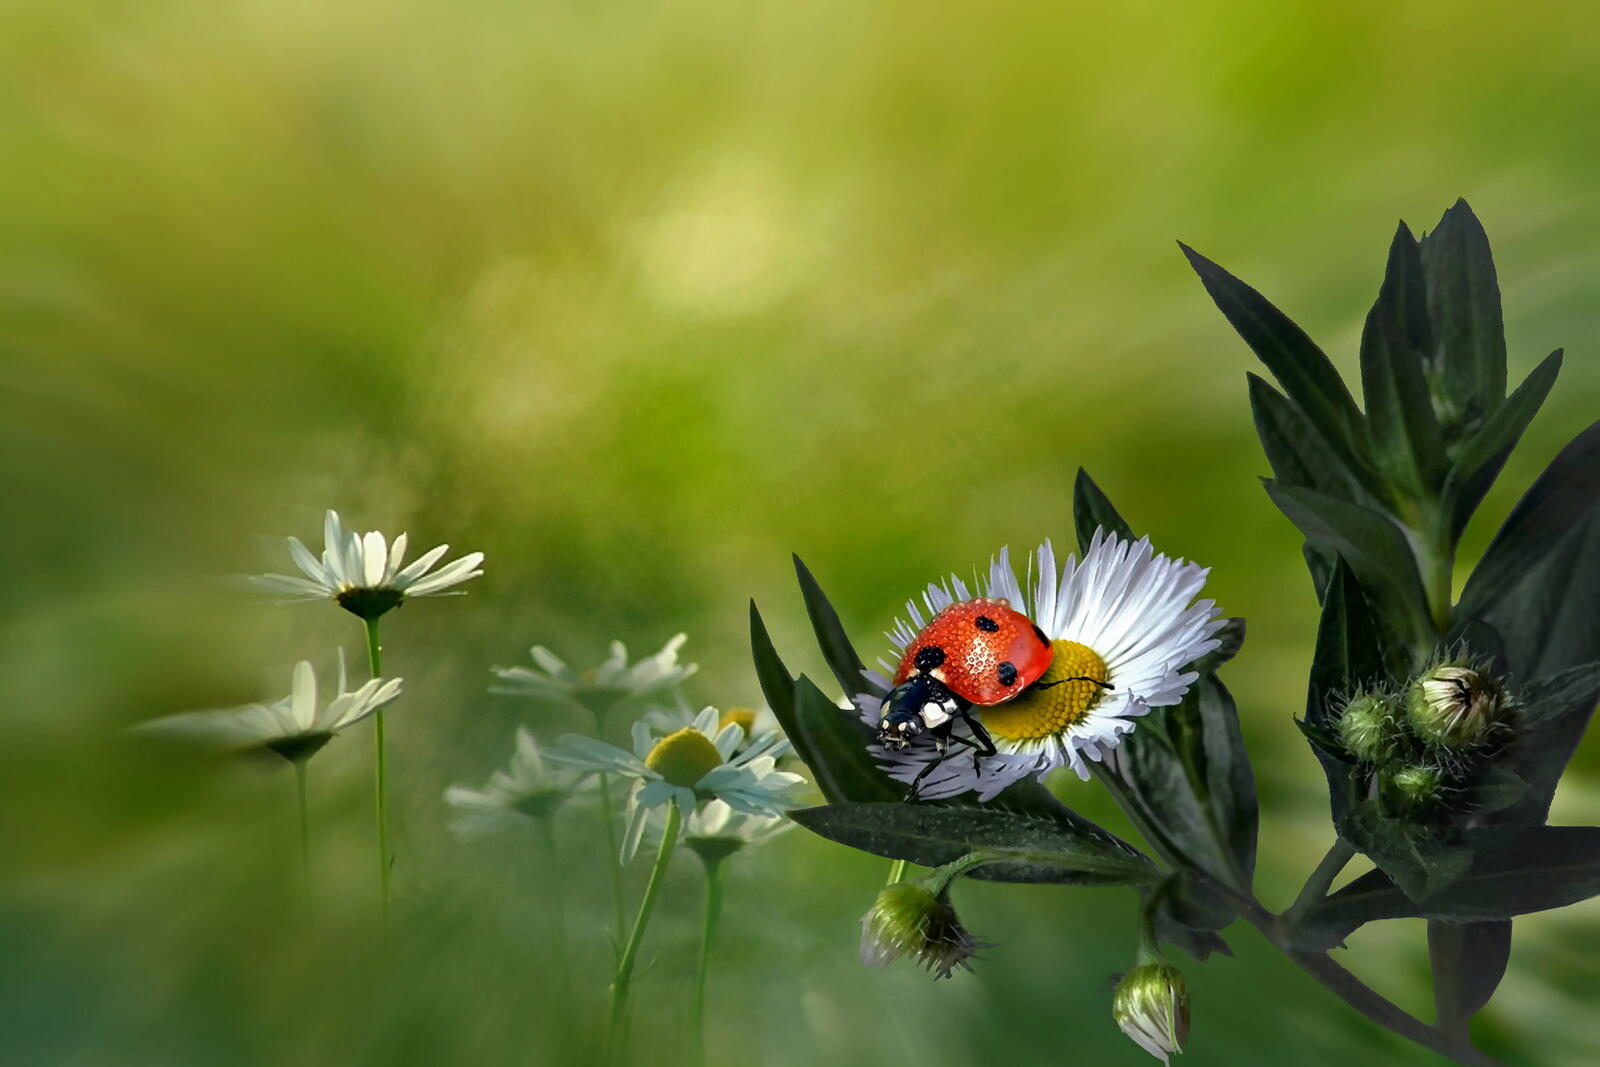 Ladybug photo gallery, macro